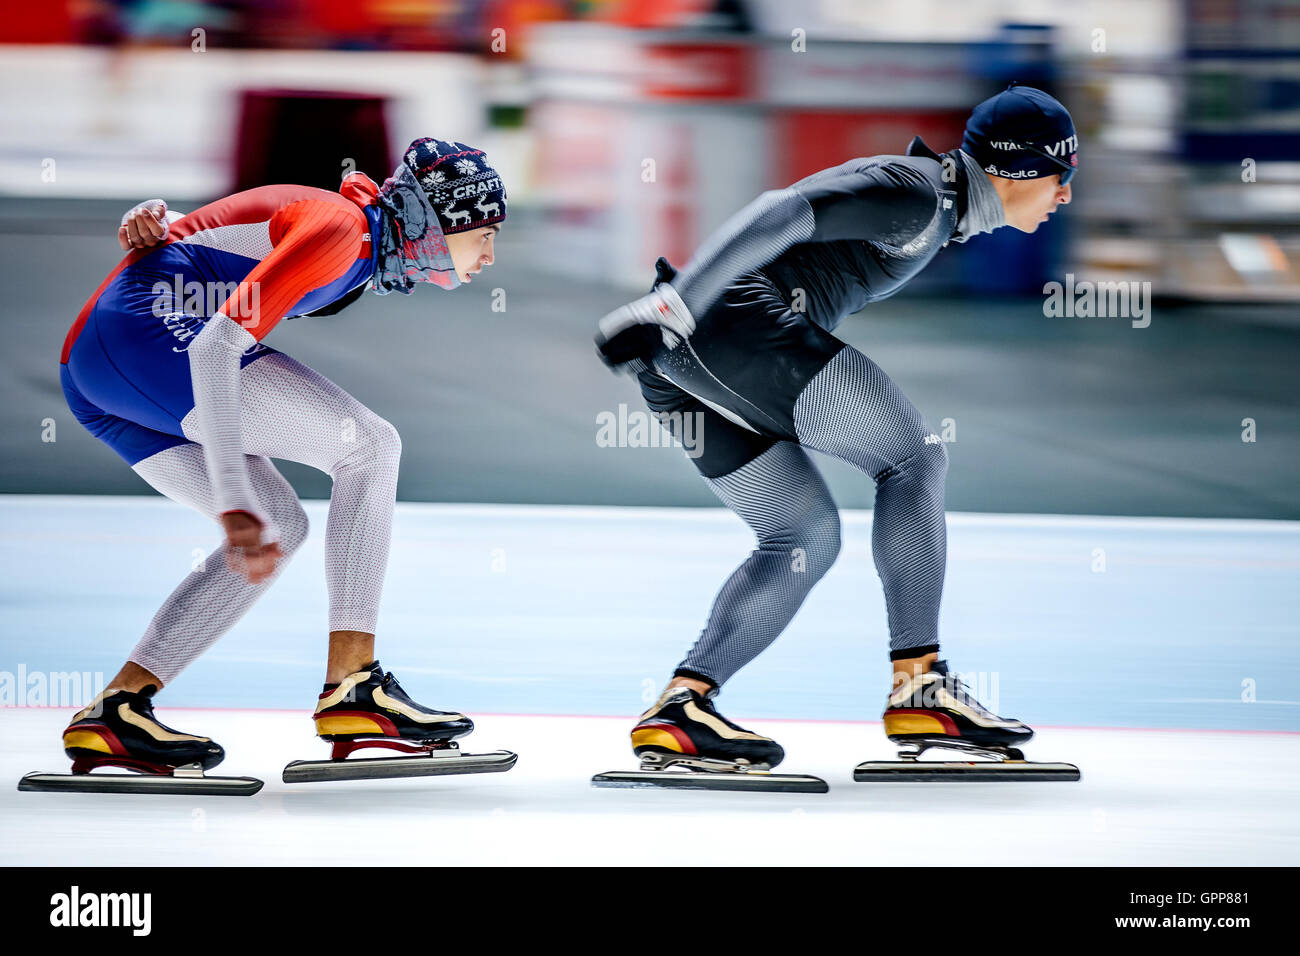 Deux patineurs hommes course derrière d'autres au cours de l'été Tasse en patinage de vitesse Banque D'Images